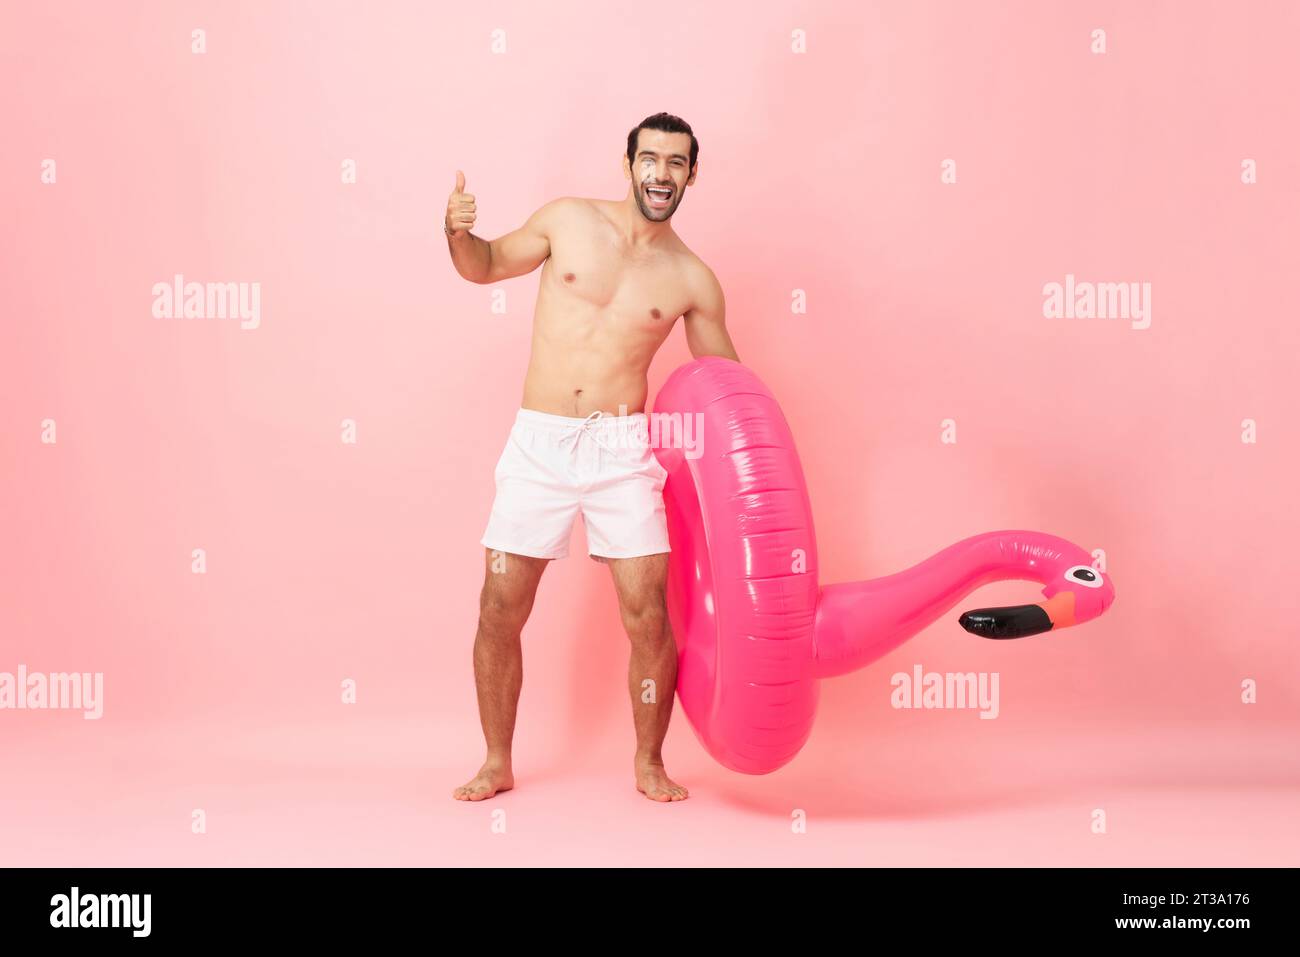 Ganzkörper-Sommerporträt eines glücklichen kaukasischen Mannes, der die Daumen hochgibt und Gummiring in rosa Farbe hält, isolierte Hintergrundaufnahme im Studio Stockfoto